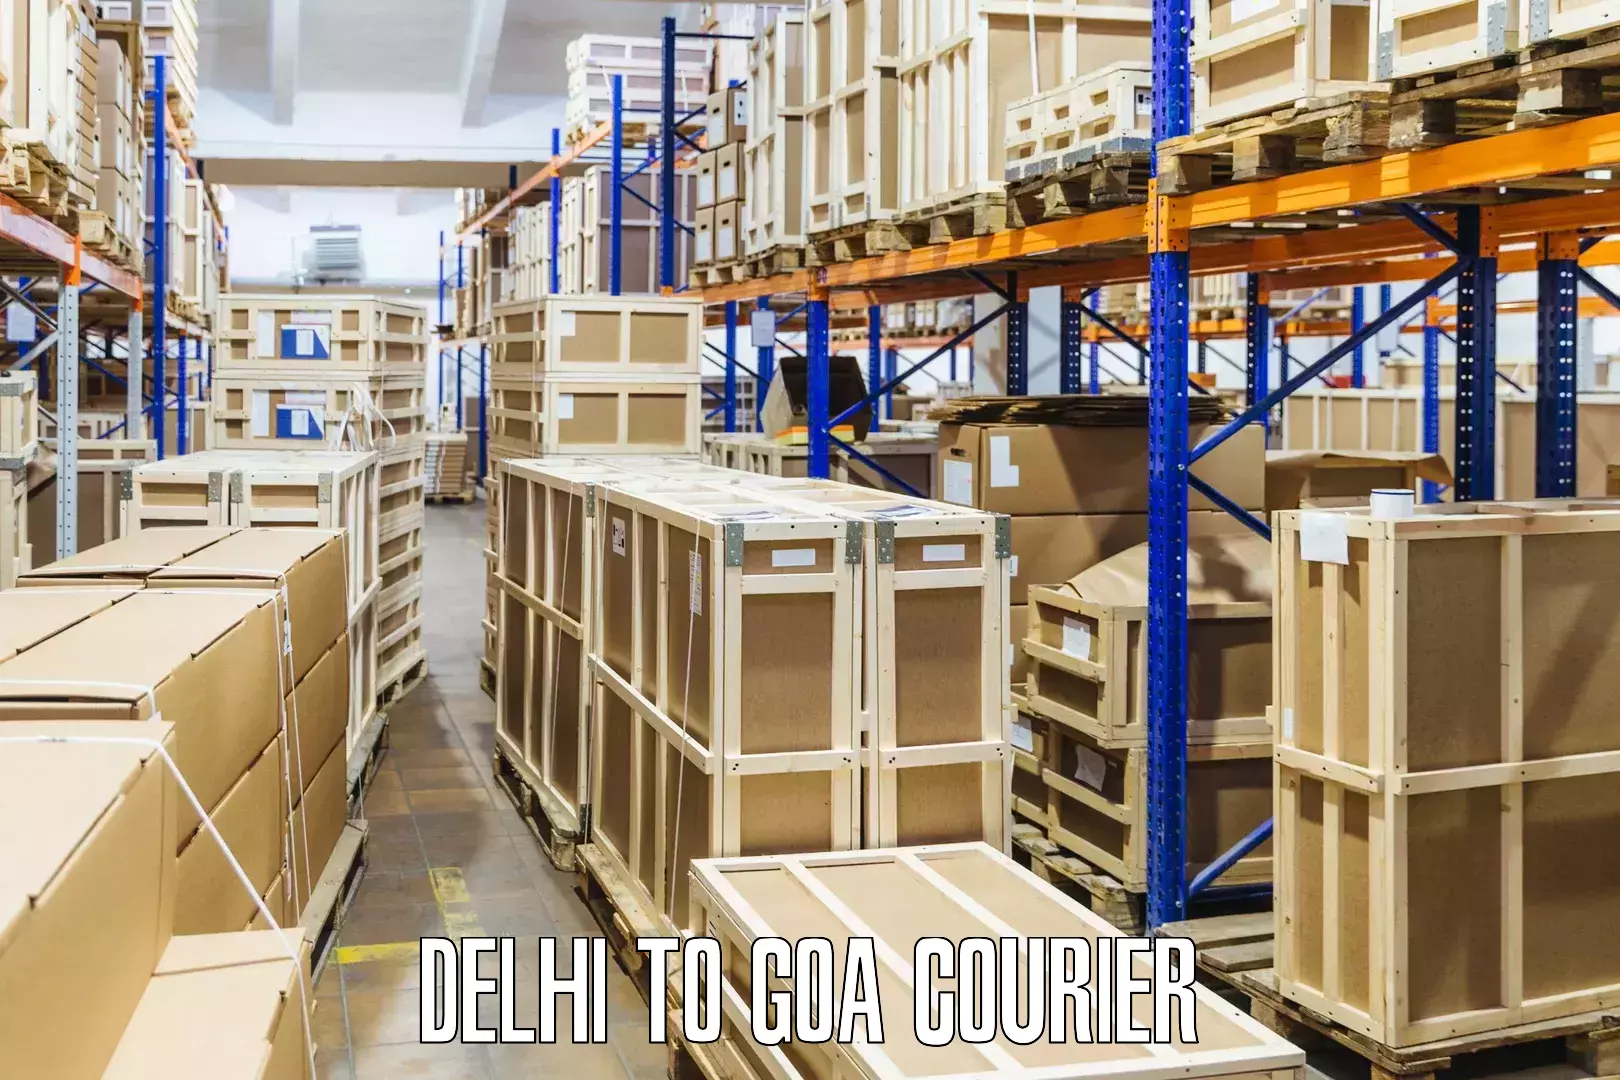 Cargo courier service Delhi to IIT Goa